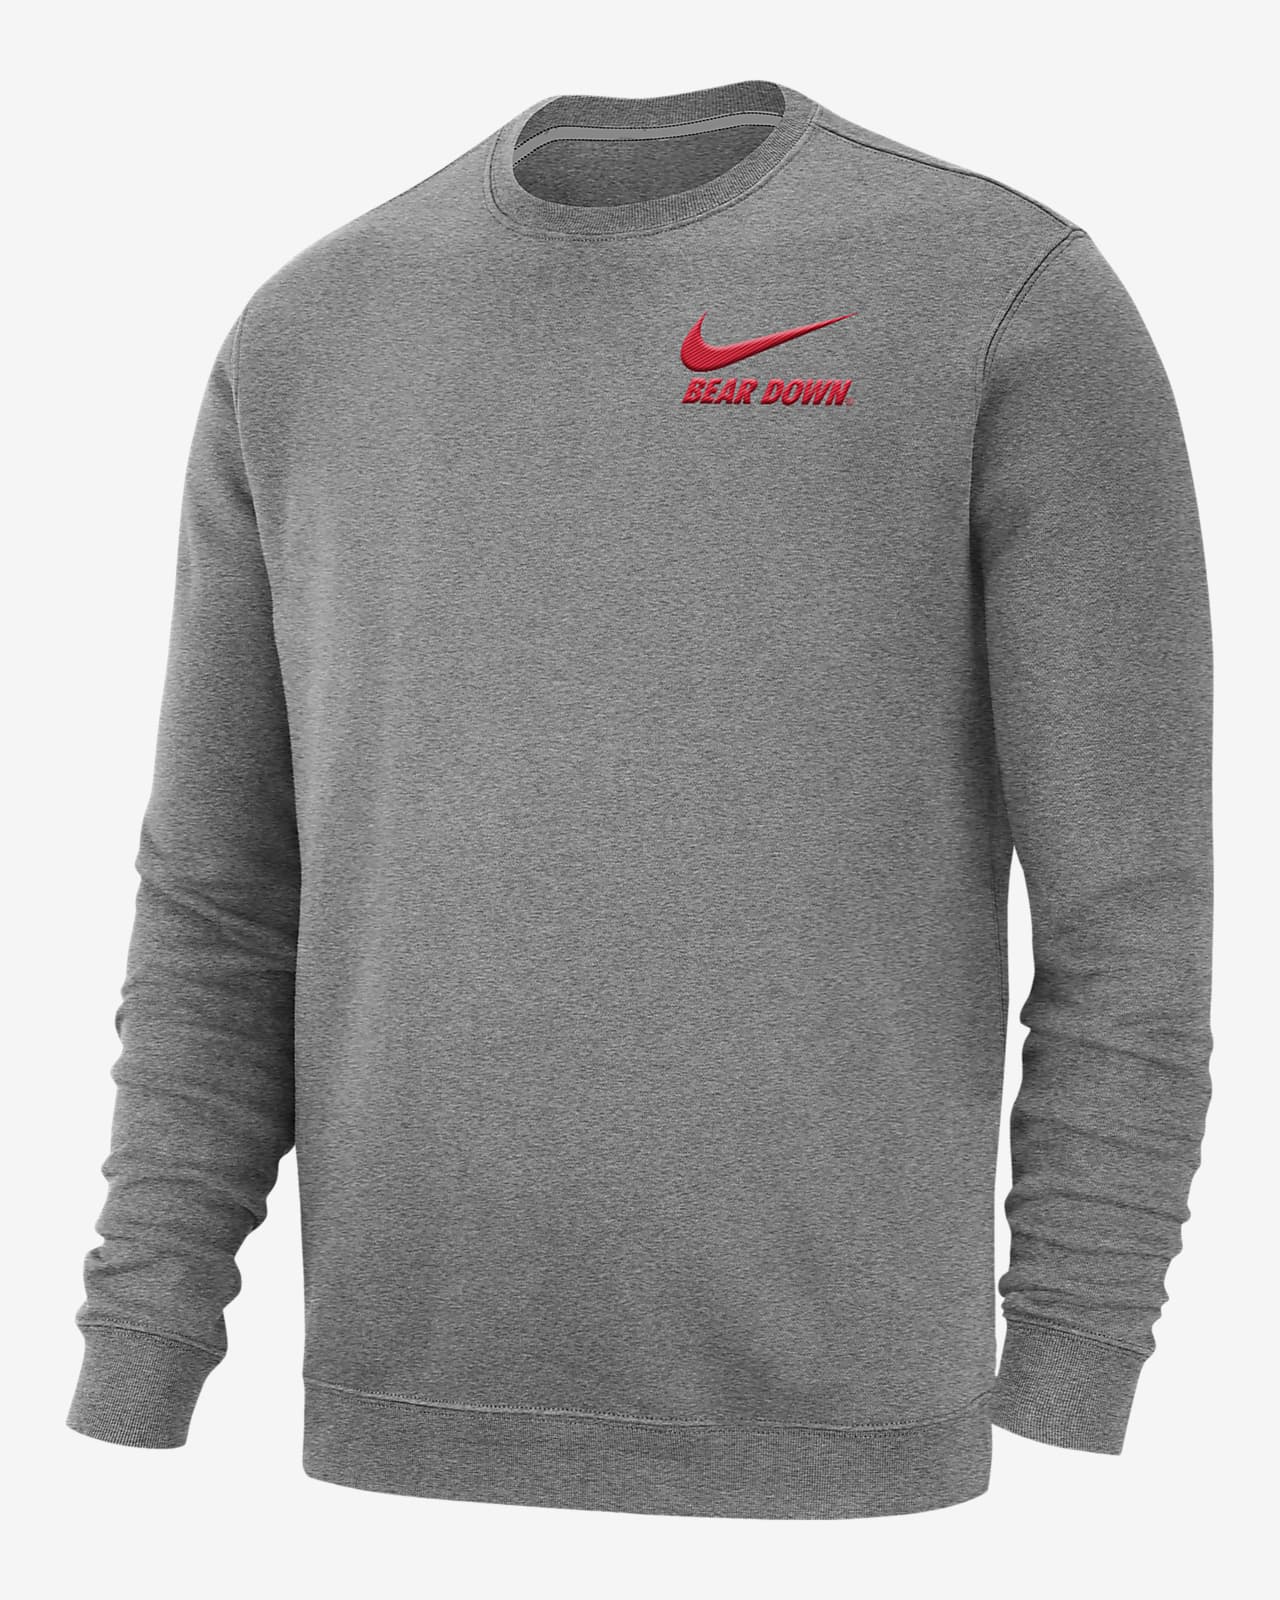 Nike College Club Fleece (Arizona) Men's Sweatshirt